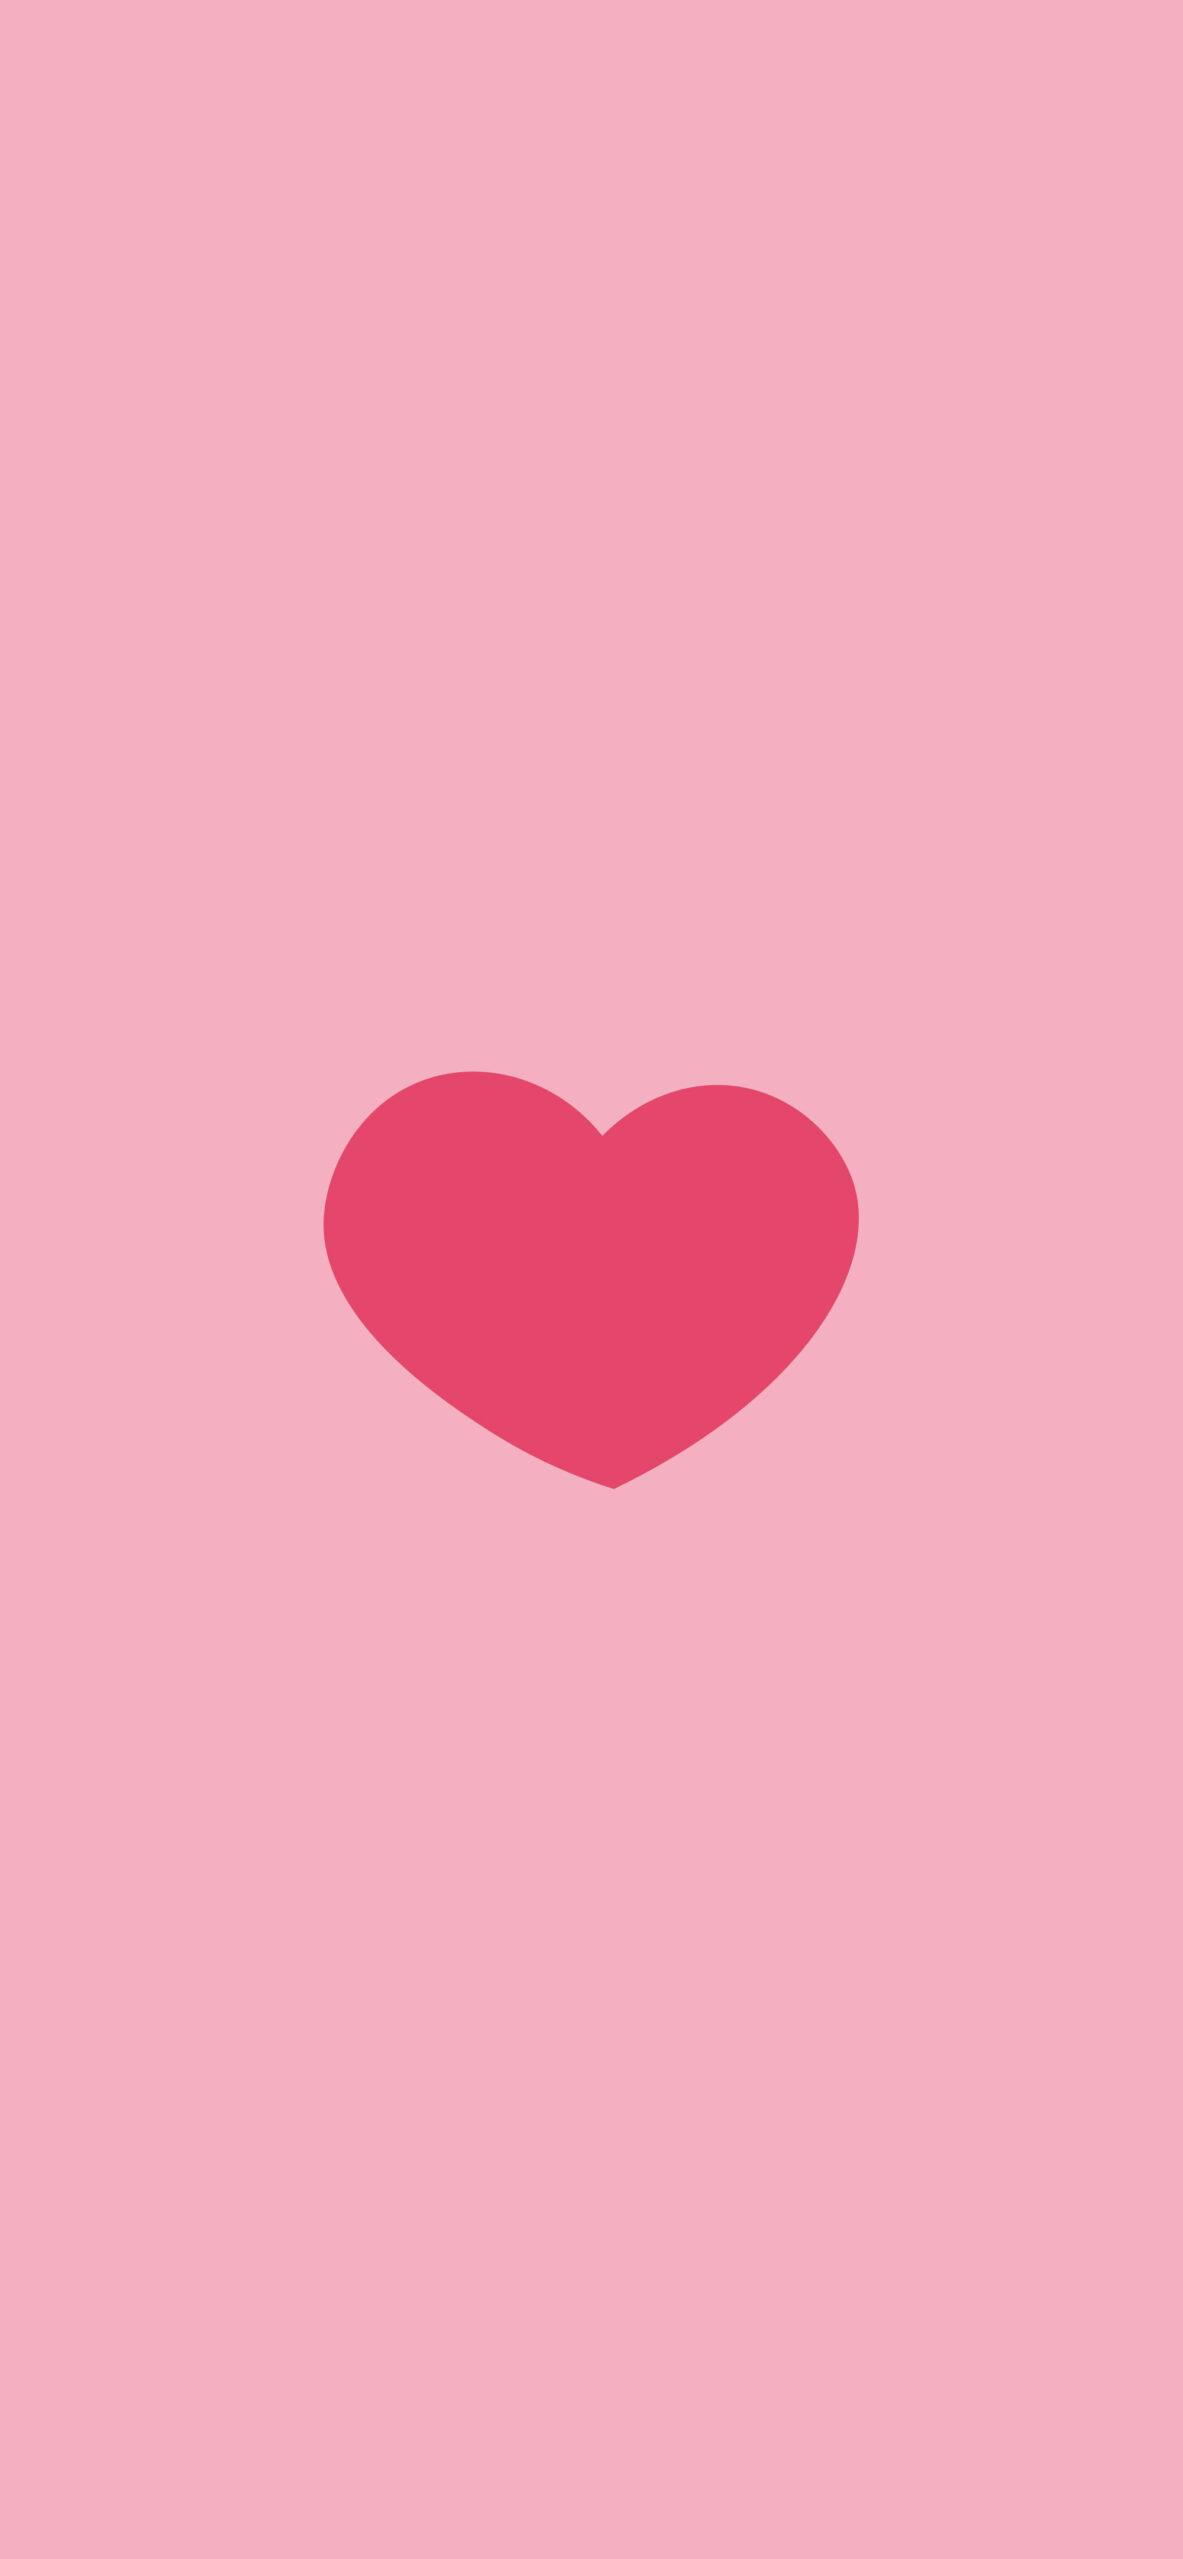 Love Hearts Pattern Pink Wallpaper Aesthetic Heart 4k